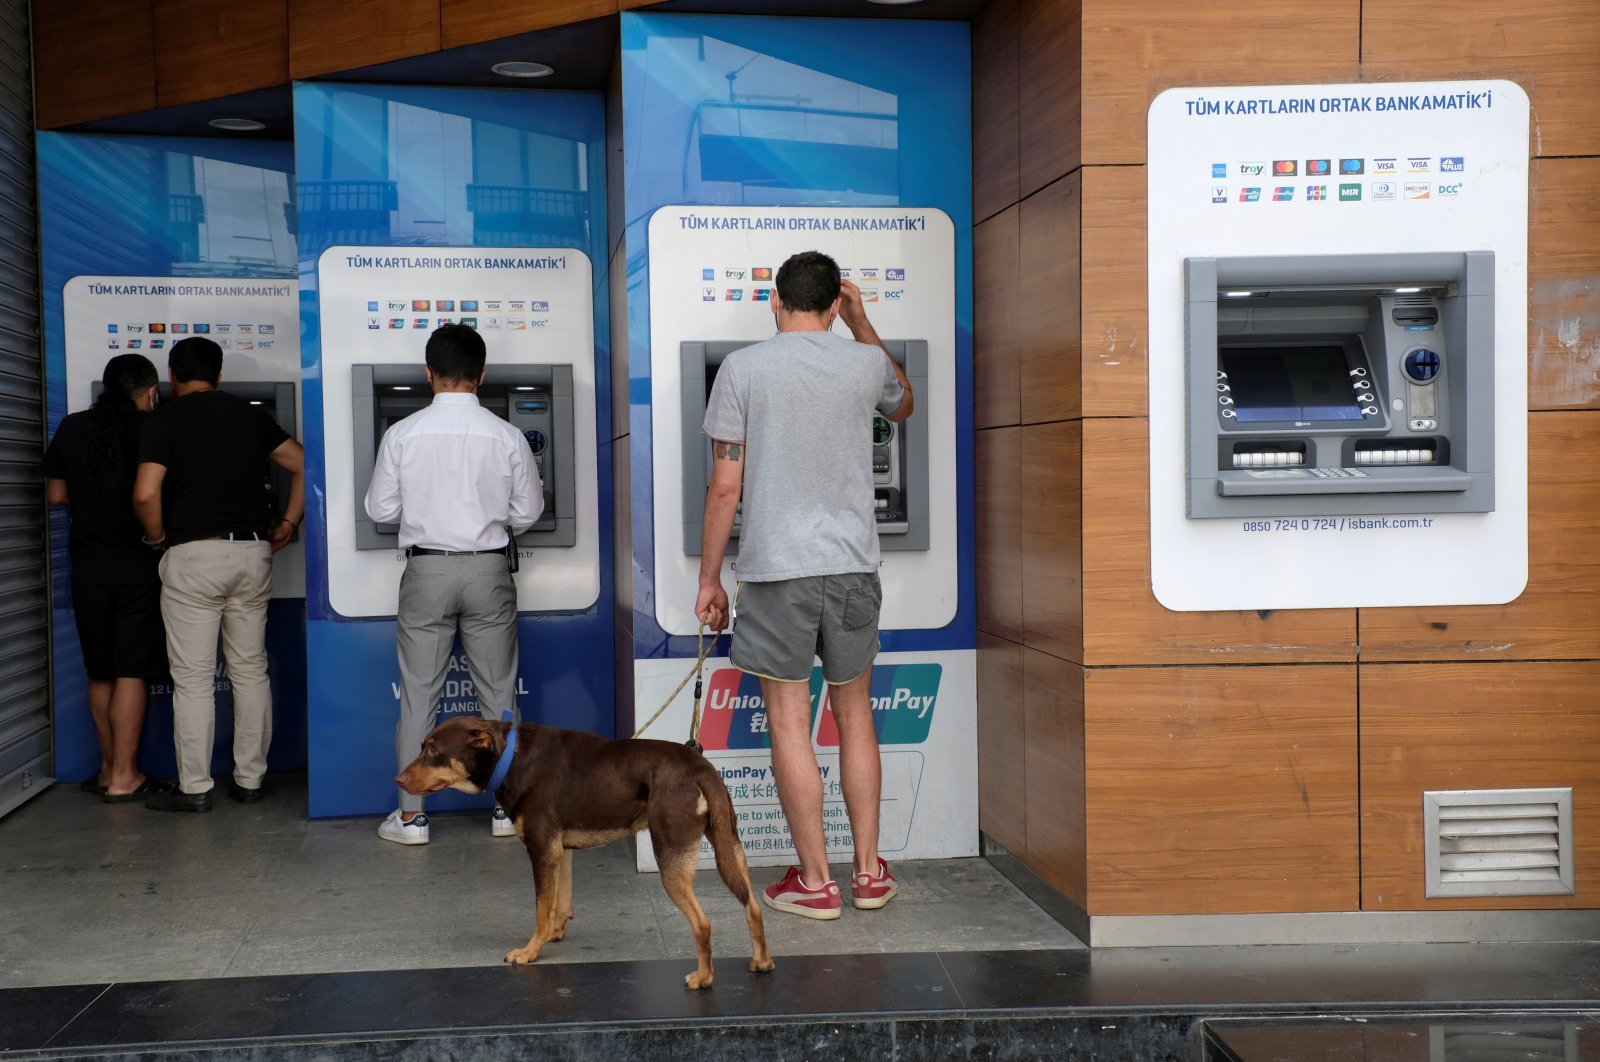 Bank sentral Turki membatalkan aturan penarikan tunai kartu kredit